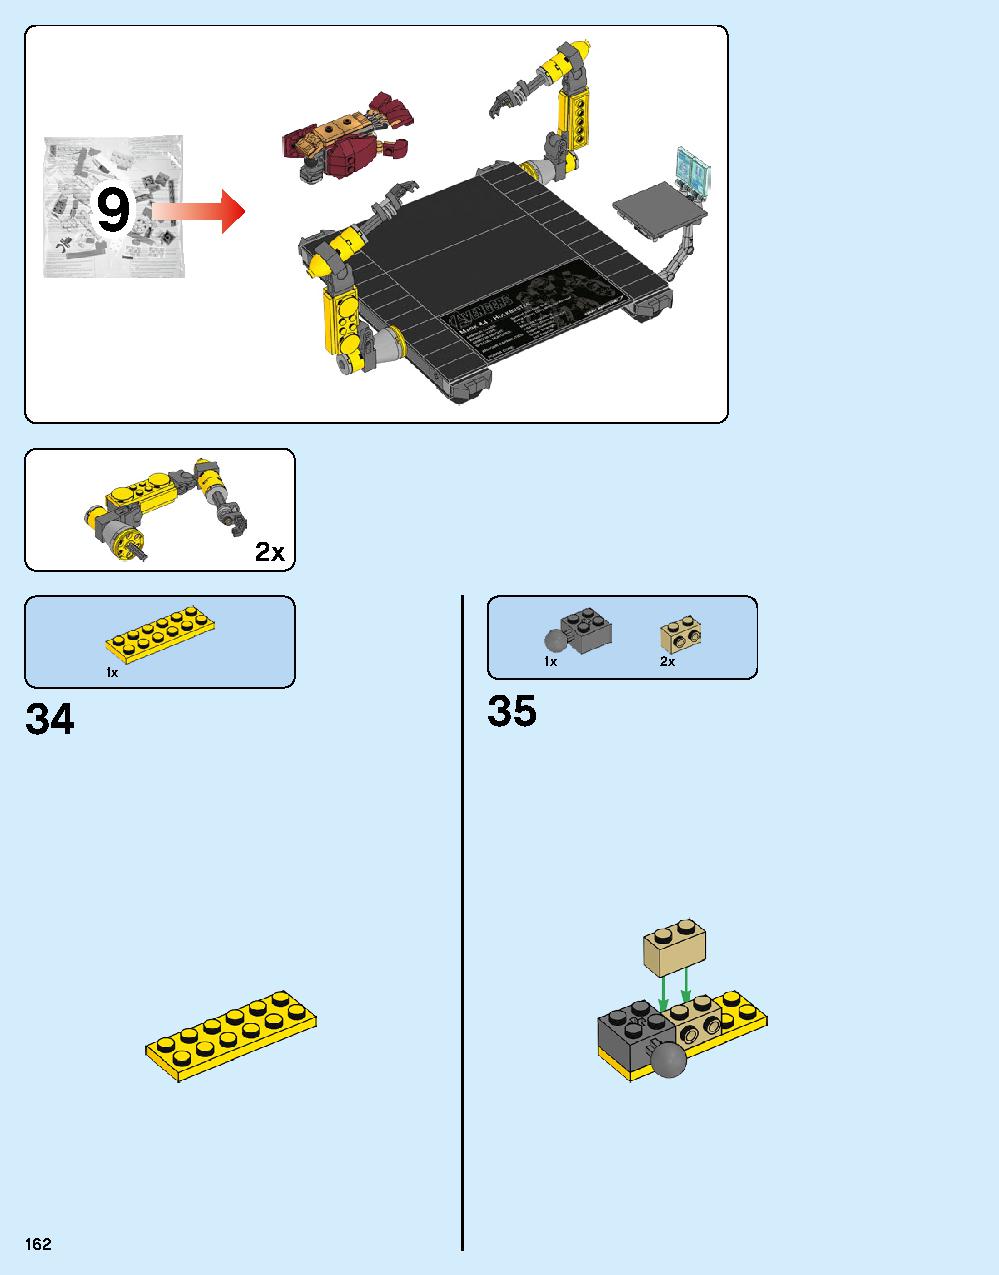 어벤져스 헐크버스터: 울트론 에디션 76105 레고 세트 제품정보 레고 조립설명서 162 page